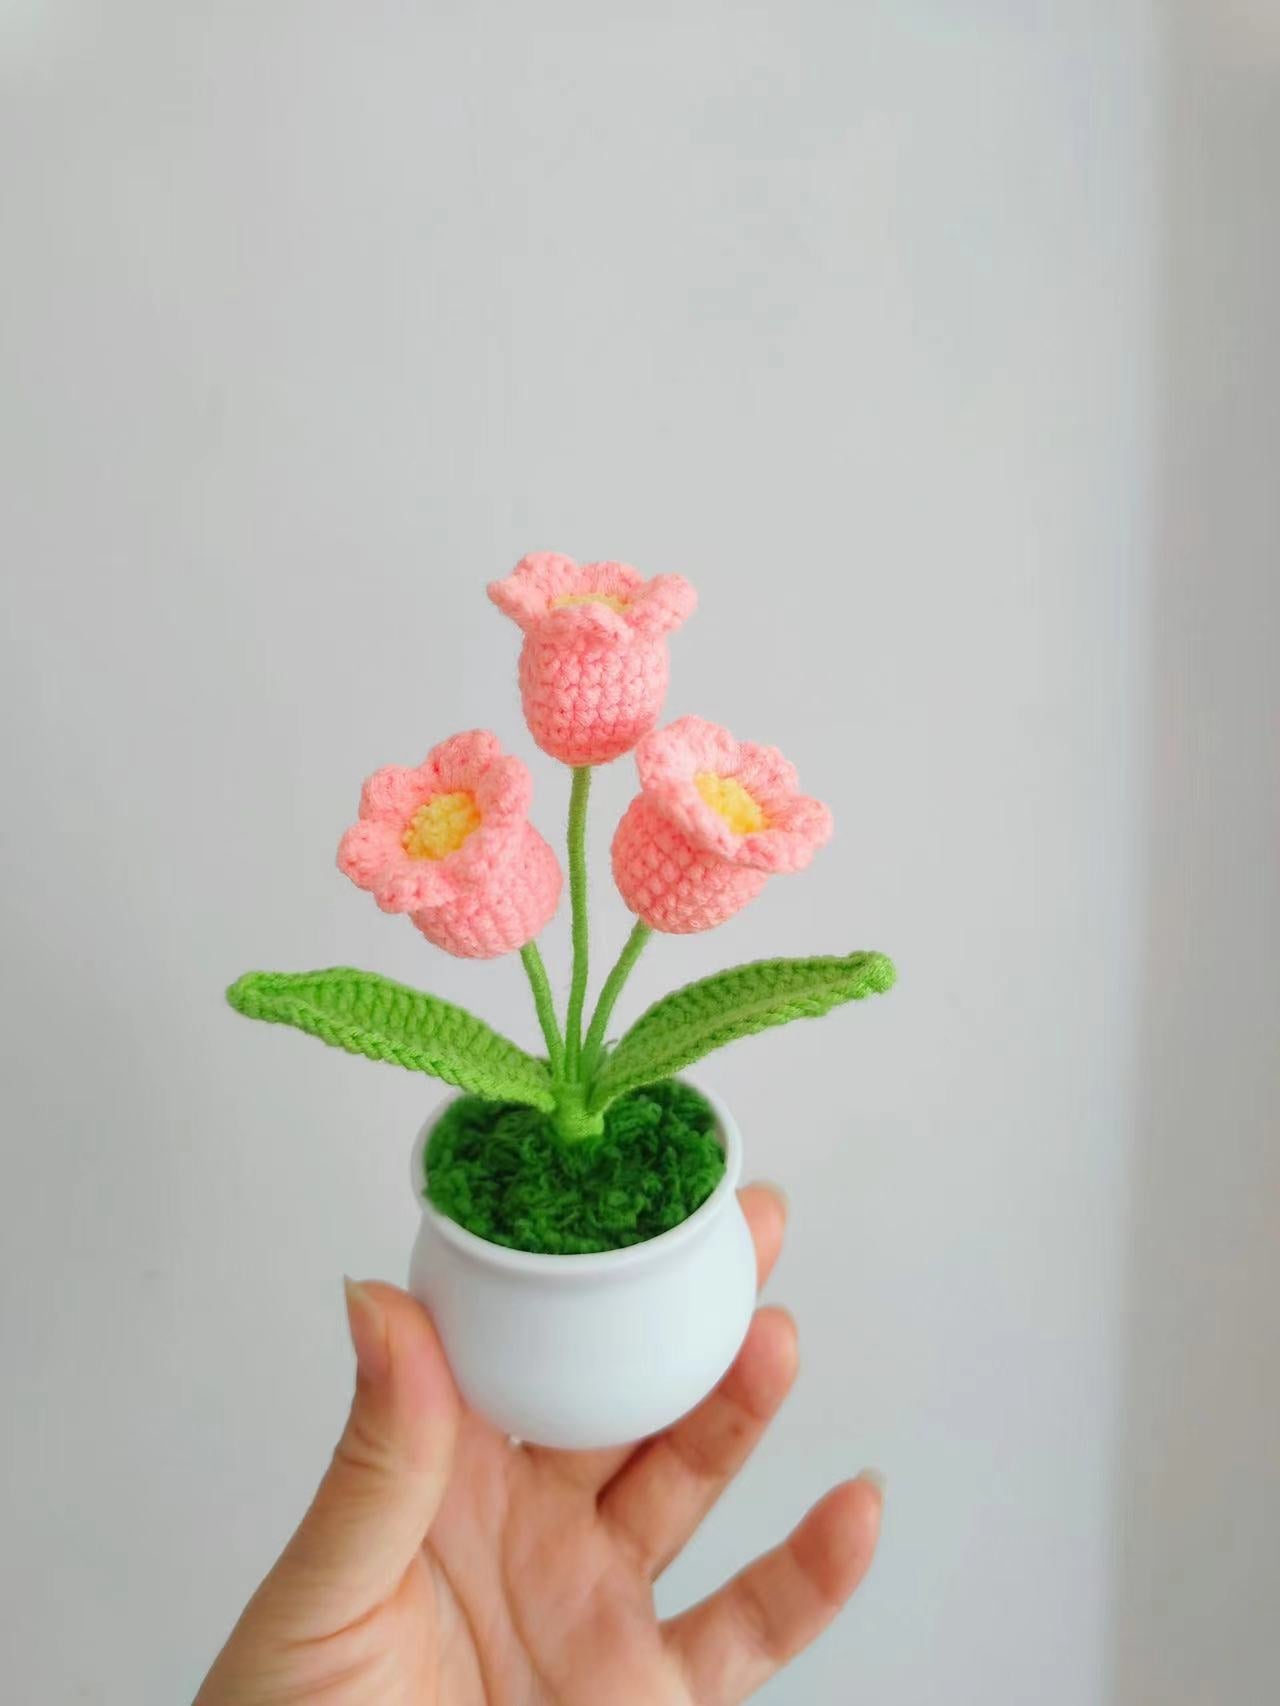 Elegant Artisanal Crocheted Blossom Pot Ornament for Gifts